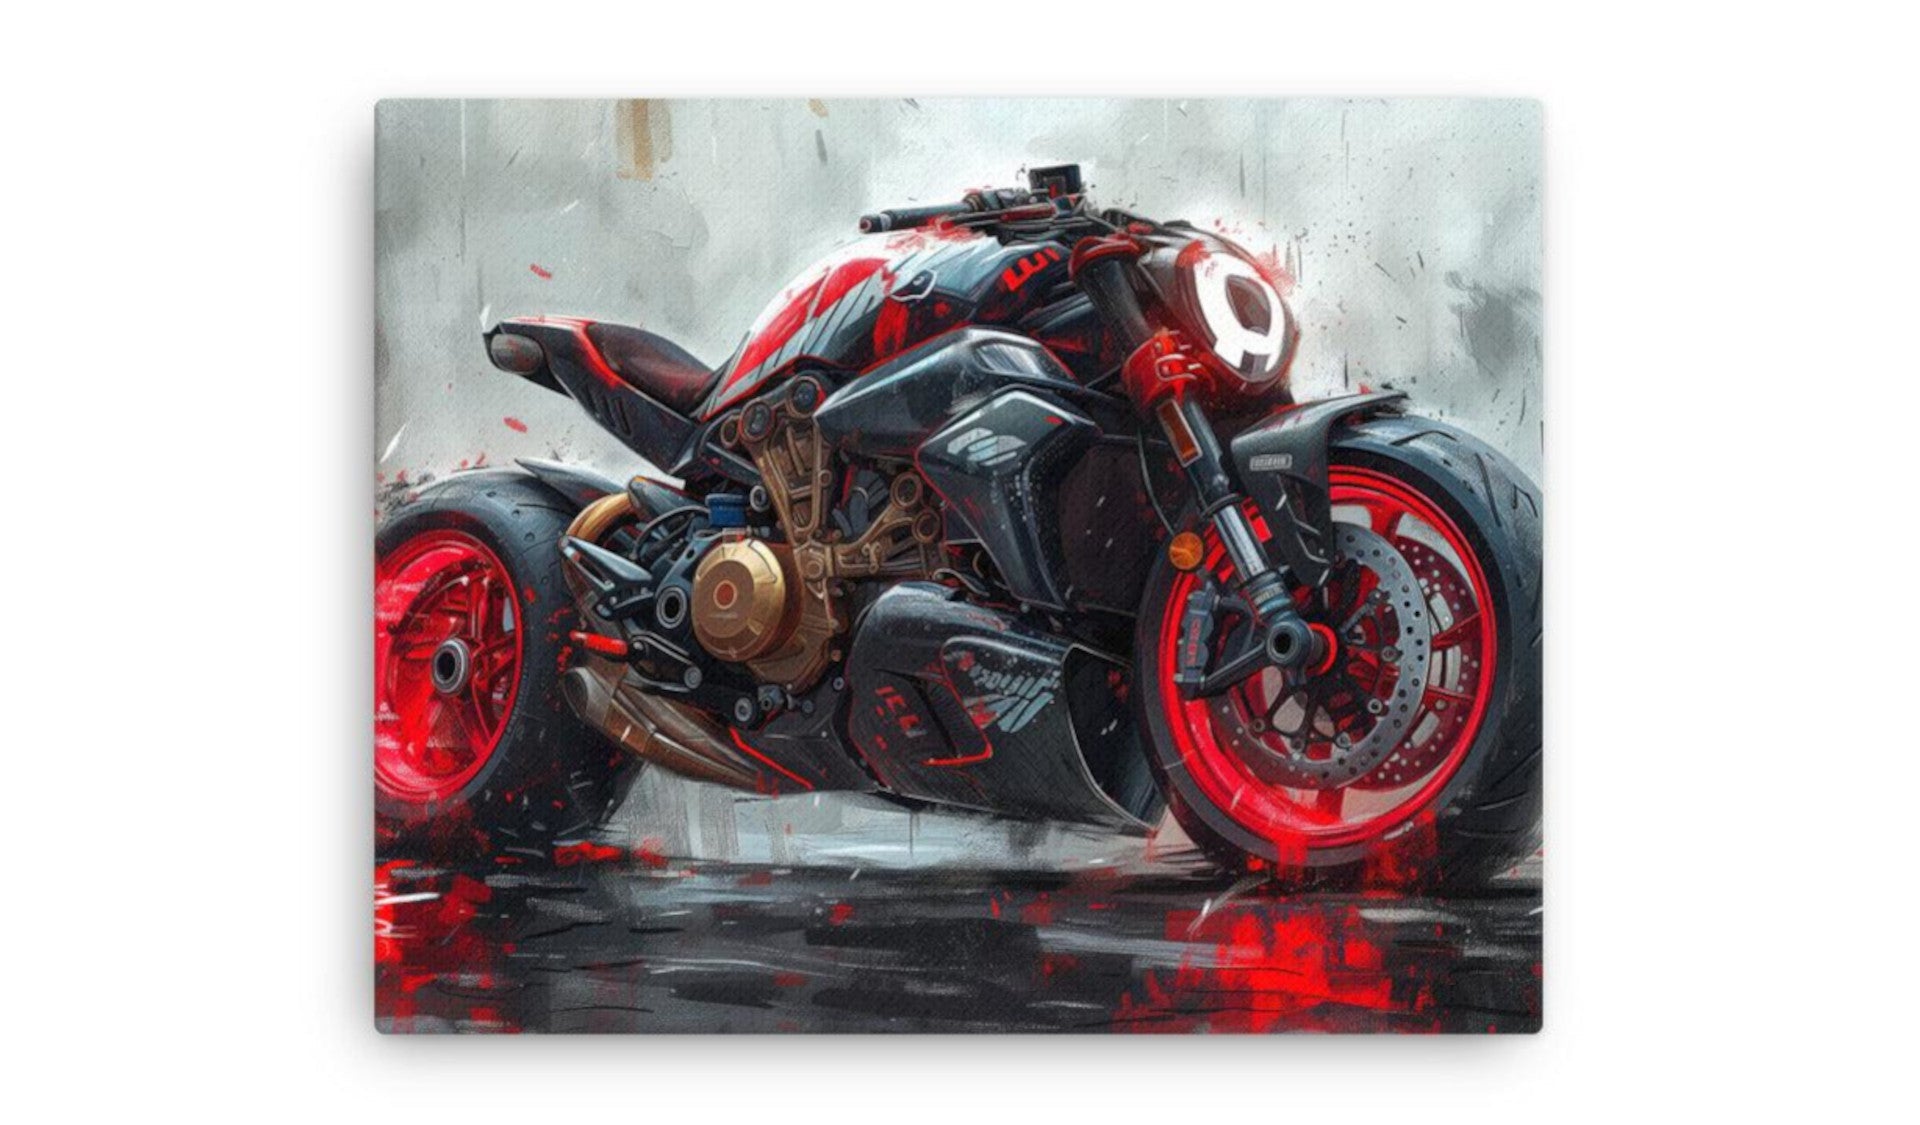 Motorrad-Art, Blog über News Motorrrad, Motorradsicherheit, Entwicklungsgeschichte Yamaha, Ducati, BMW, Honda, Suzuki